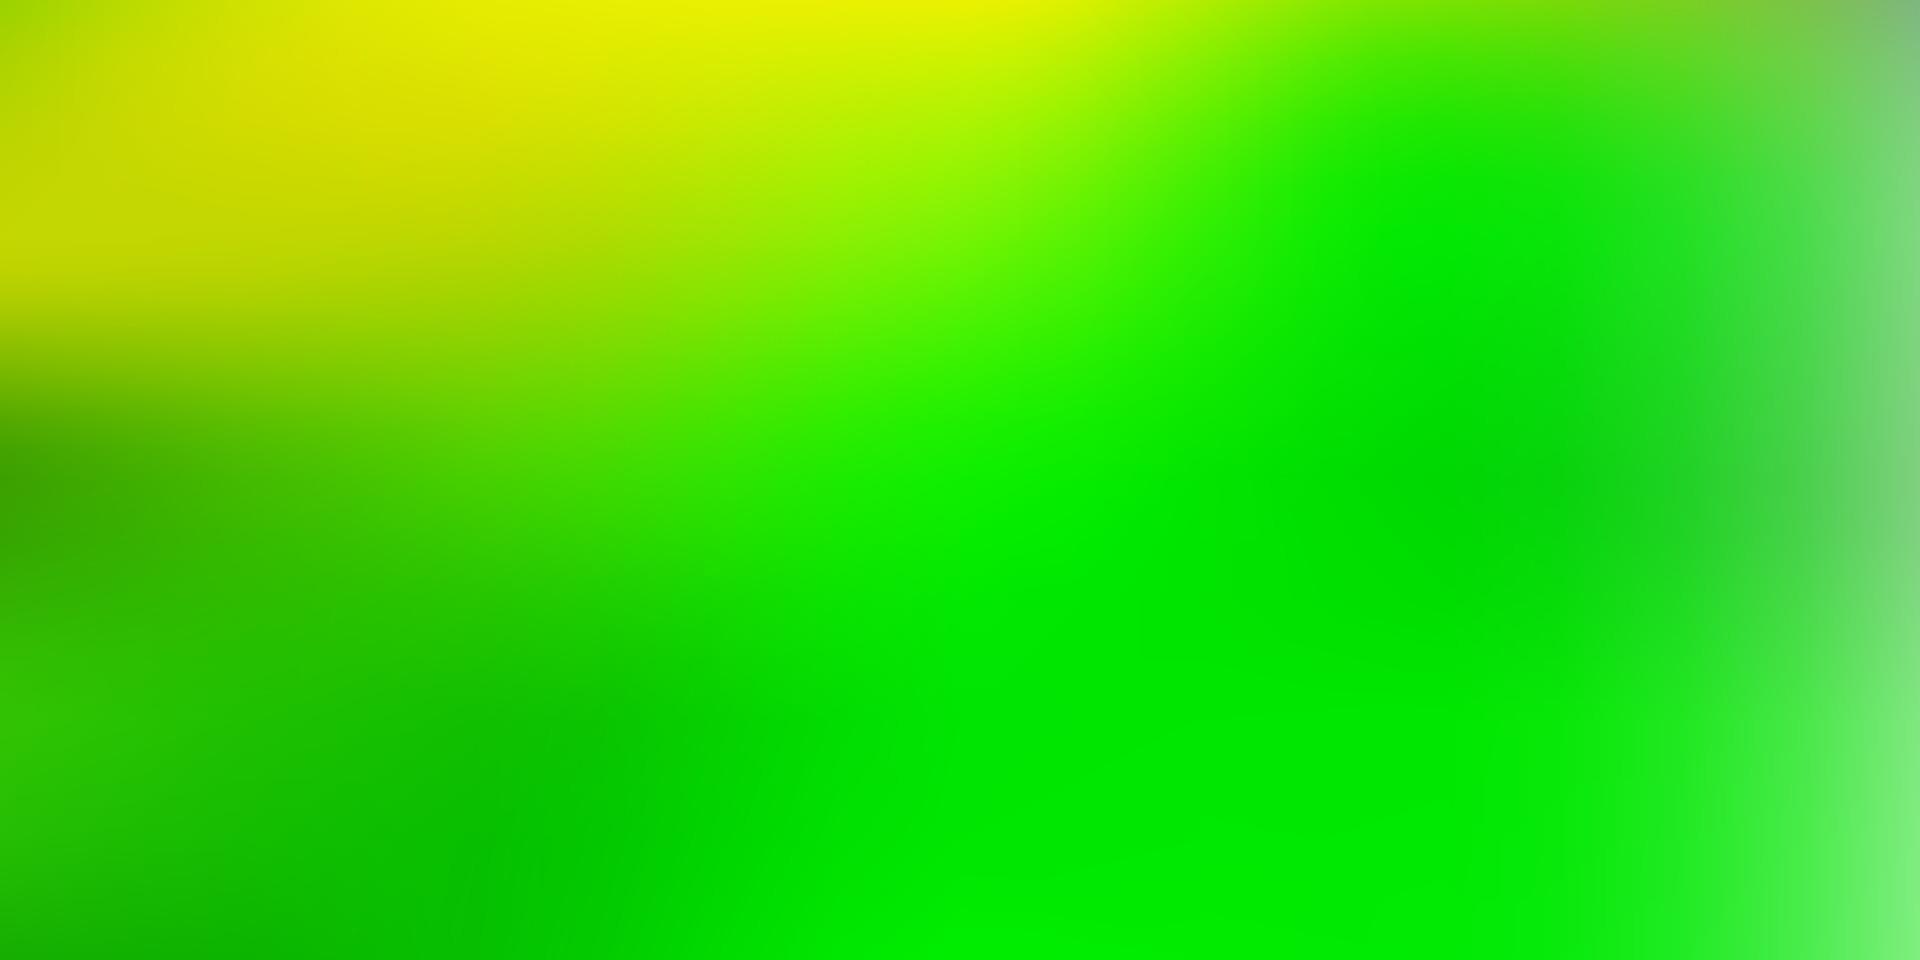 trama sfocata vettoriale verde chiaro, giallo.